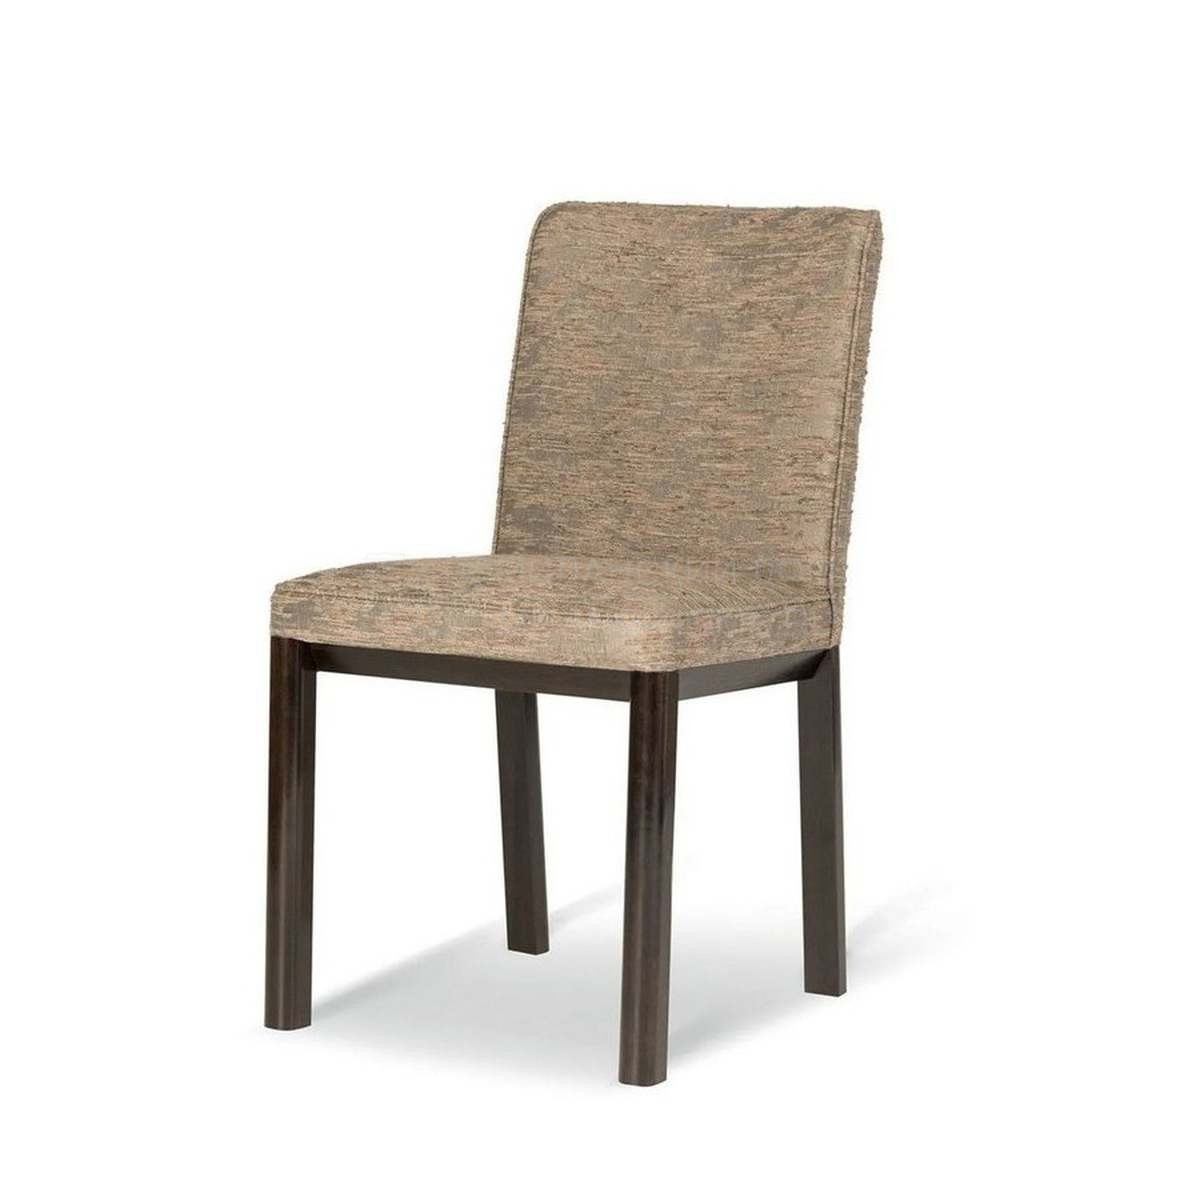 Стул Giotto chair without armrests из Италии фабрики ARMANI CASA